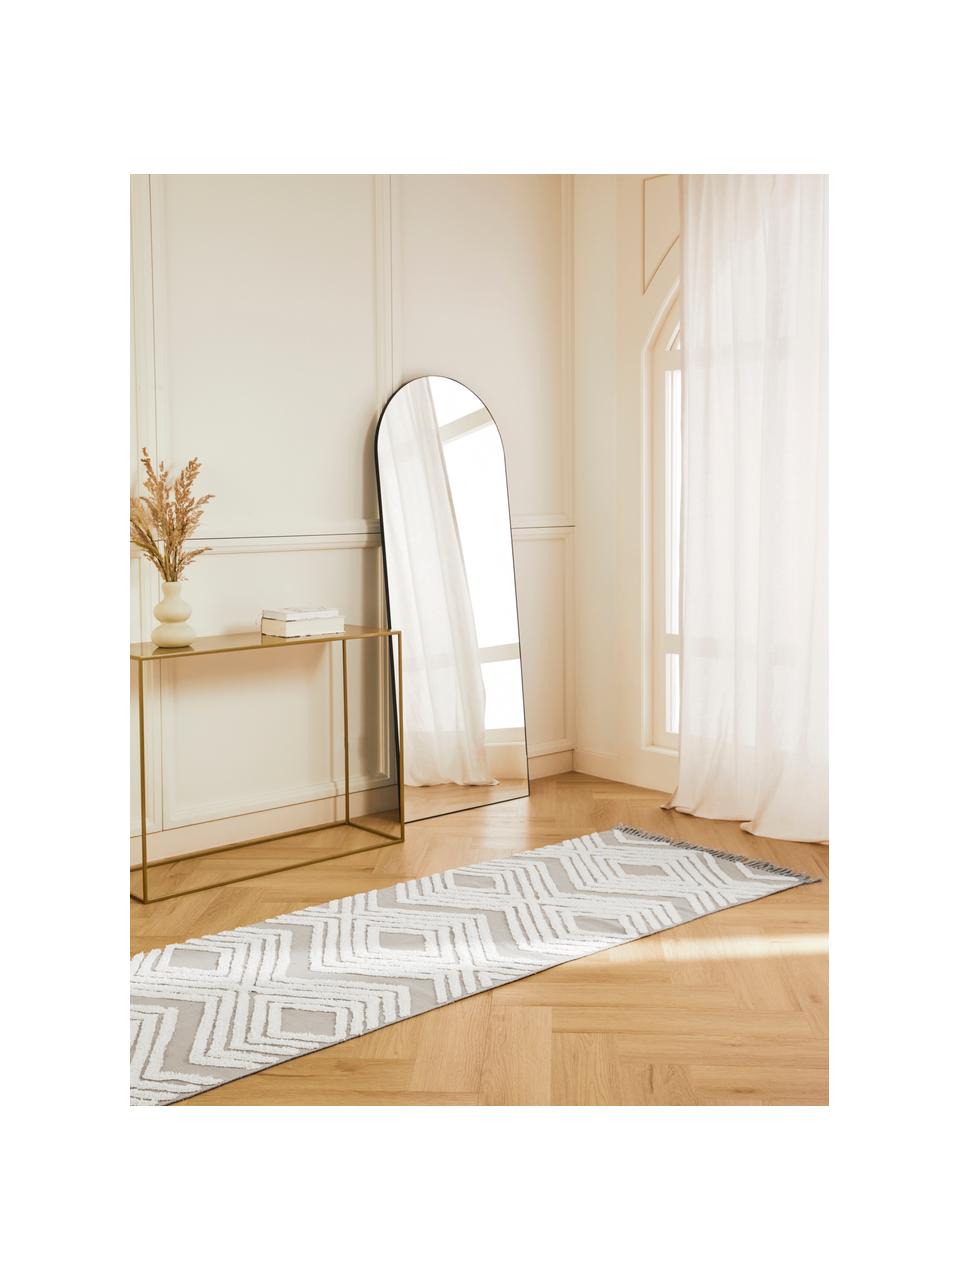 Tapis de couloir gris avec structure en relief tissé main Ziggy, 100 % coton, Gris & blanc crème, imprimé, larg. 80 x long. 200 cm